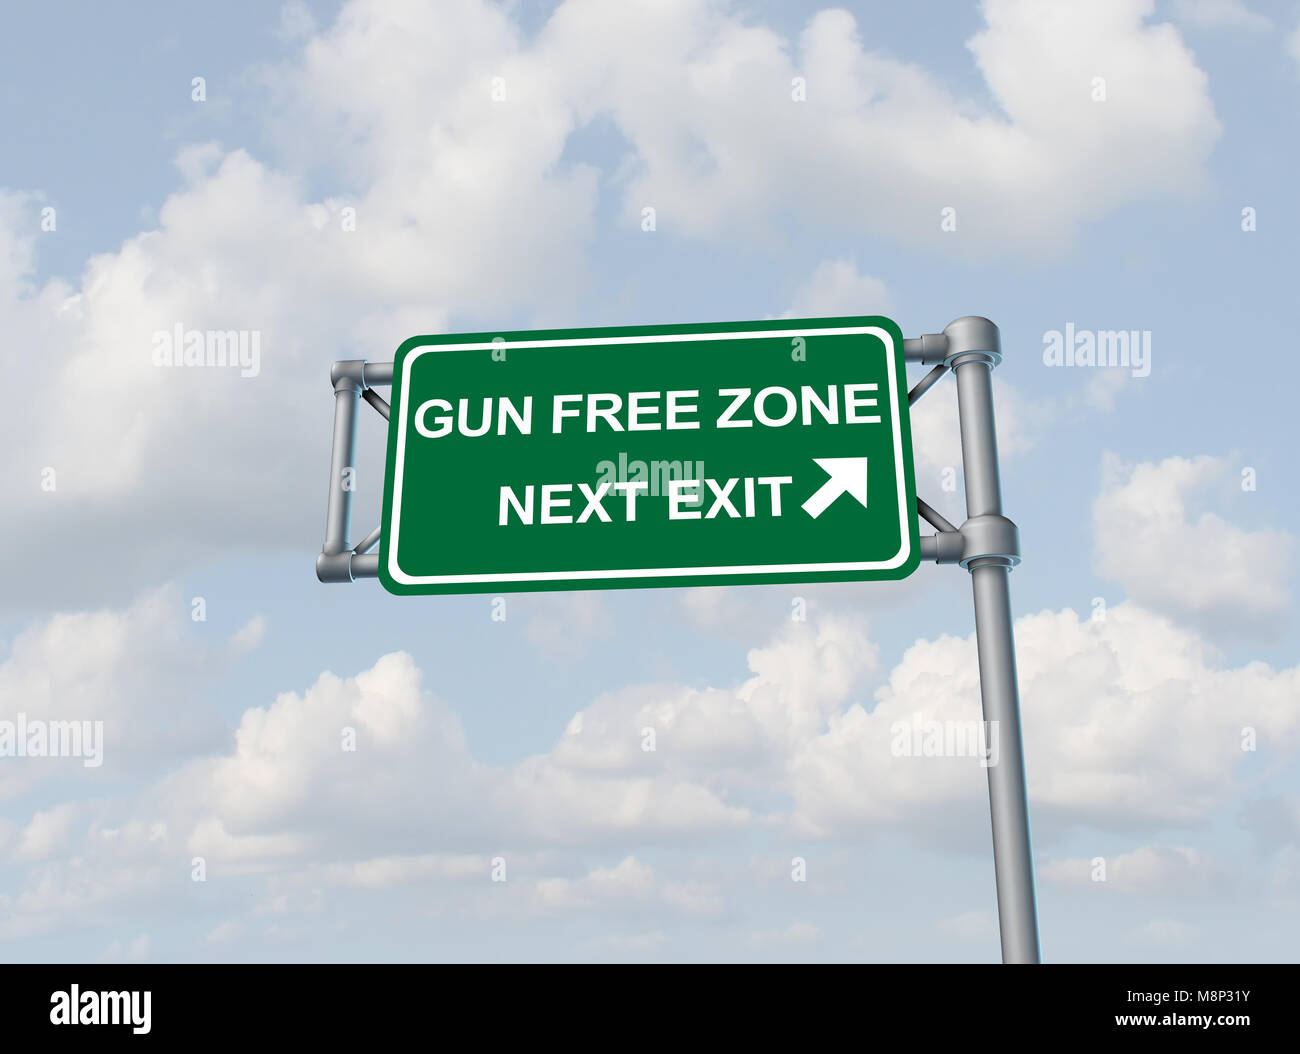 El concepto de zonas libres de armas de fuego y de armas y la prohibición de armas como una idea de la autopista cartel con texto como una pistola derechos o armar maestro cuestión como una ilustración 3D. Foto de stock